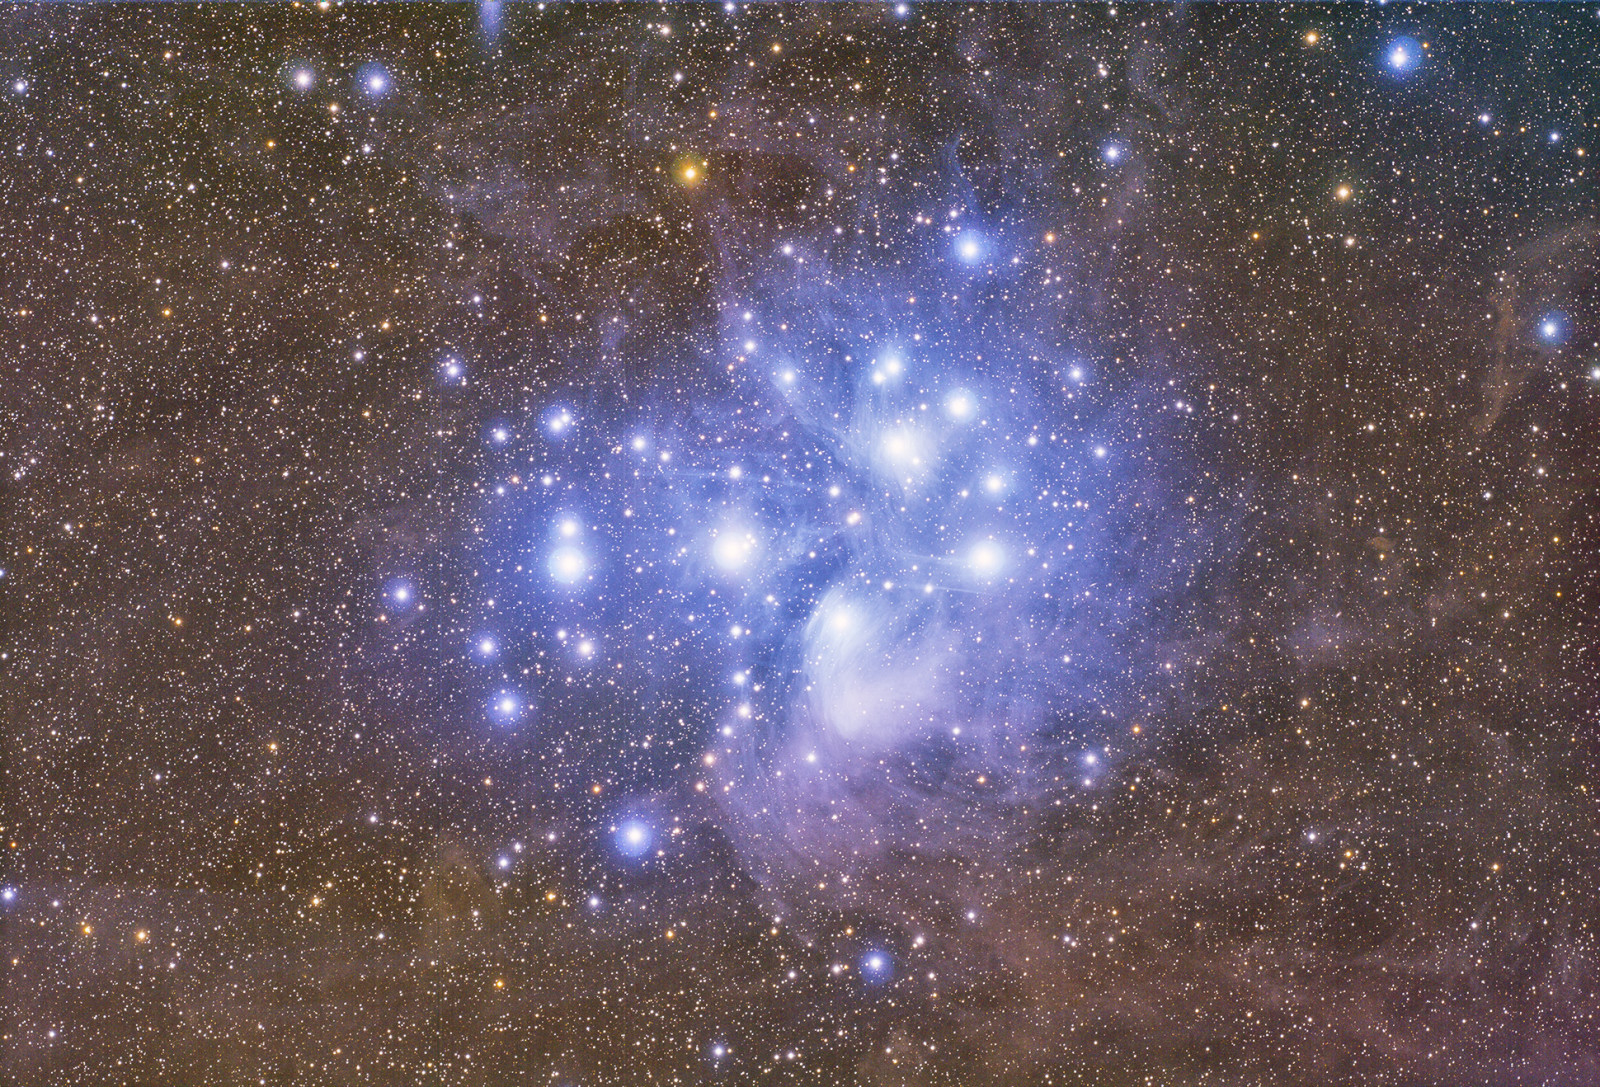 le宿星团, 星团, M-45